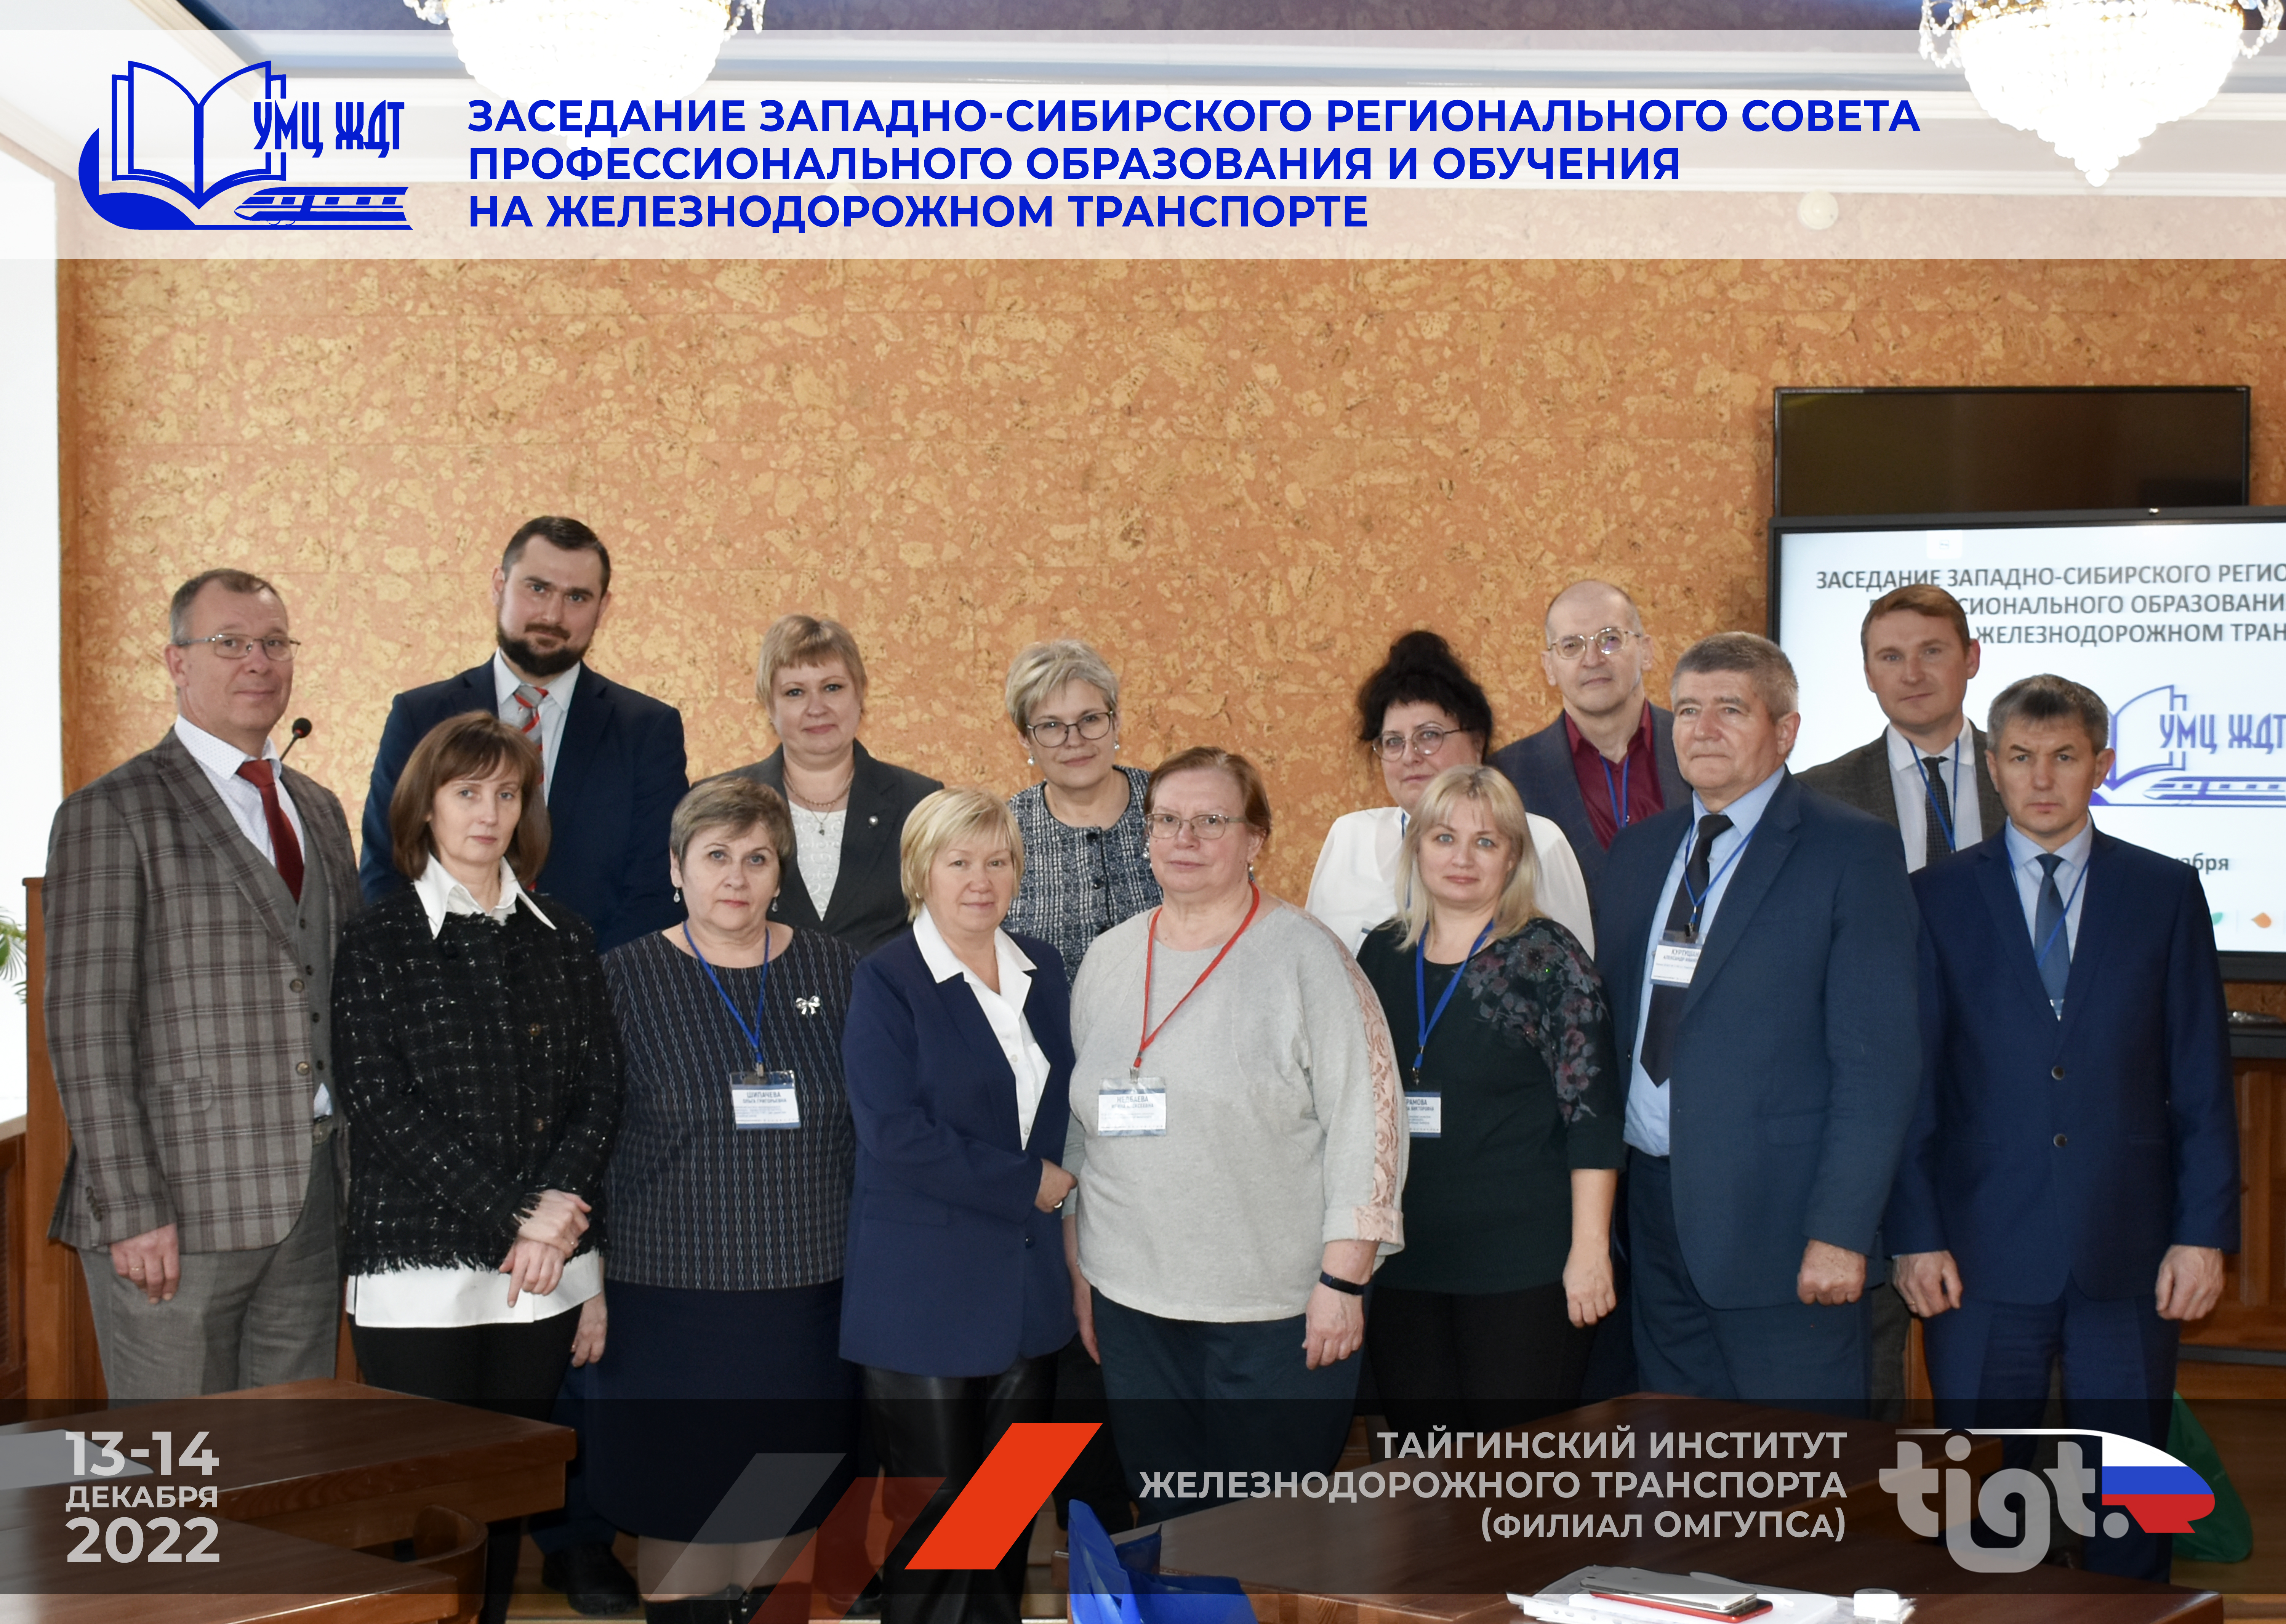 13-14 декабря 2022 года состоялось заседание Западно-Сибирского регионального совета профессионального образования и профессионального обучения на железнодорожном транспорте